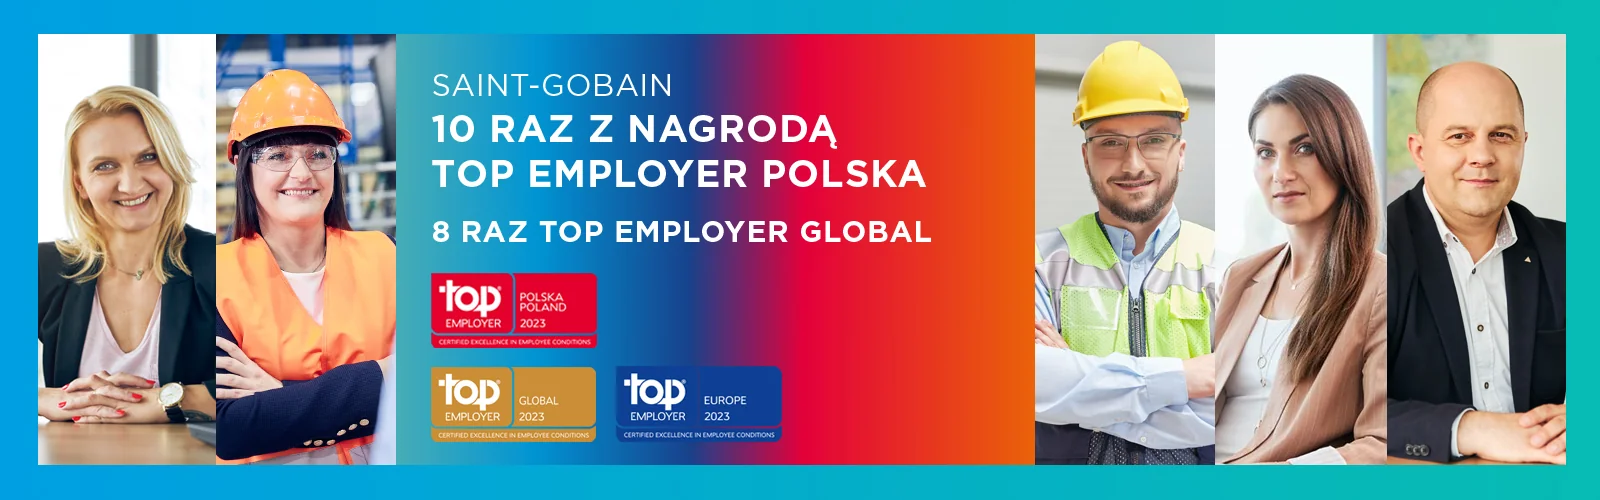 Top Employer Global 2023: Saint-Gobain 8. rok z rzędu wśród najlepszych pracodawców na świecie i po raz 10. z tytułem Top Employer Polska!